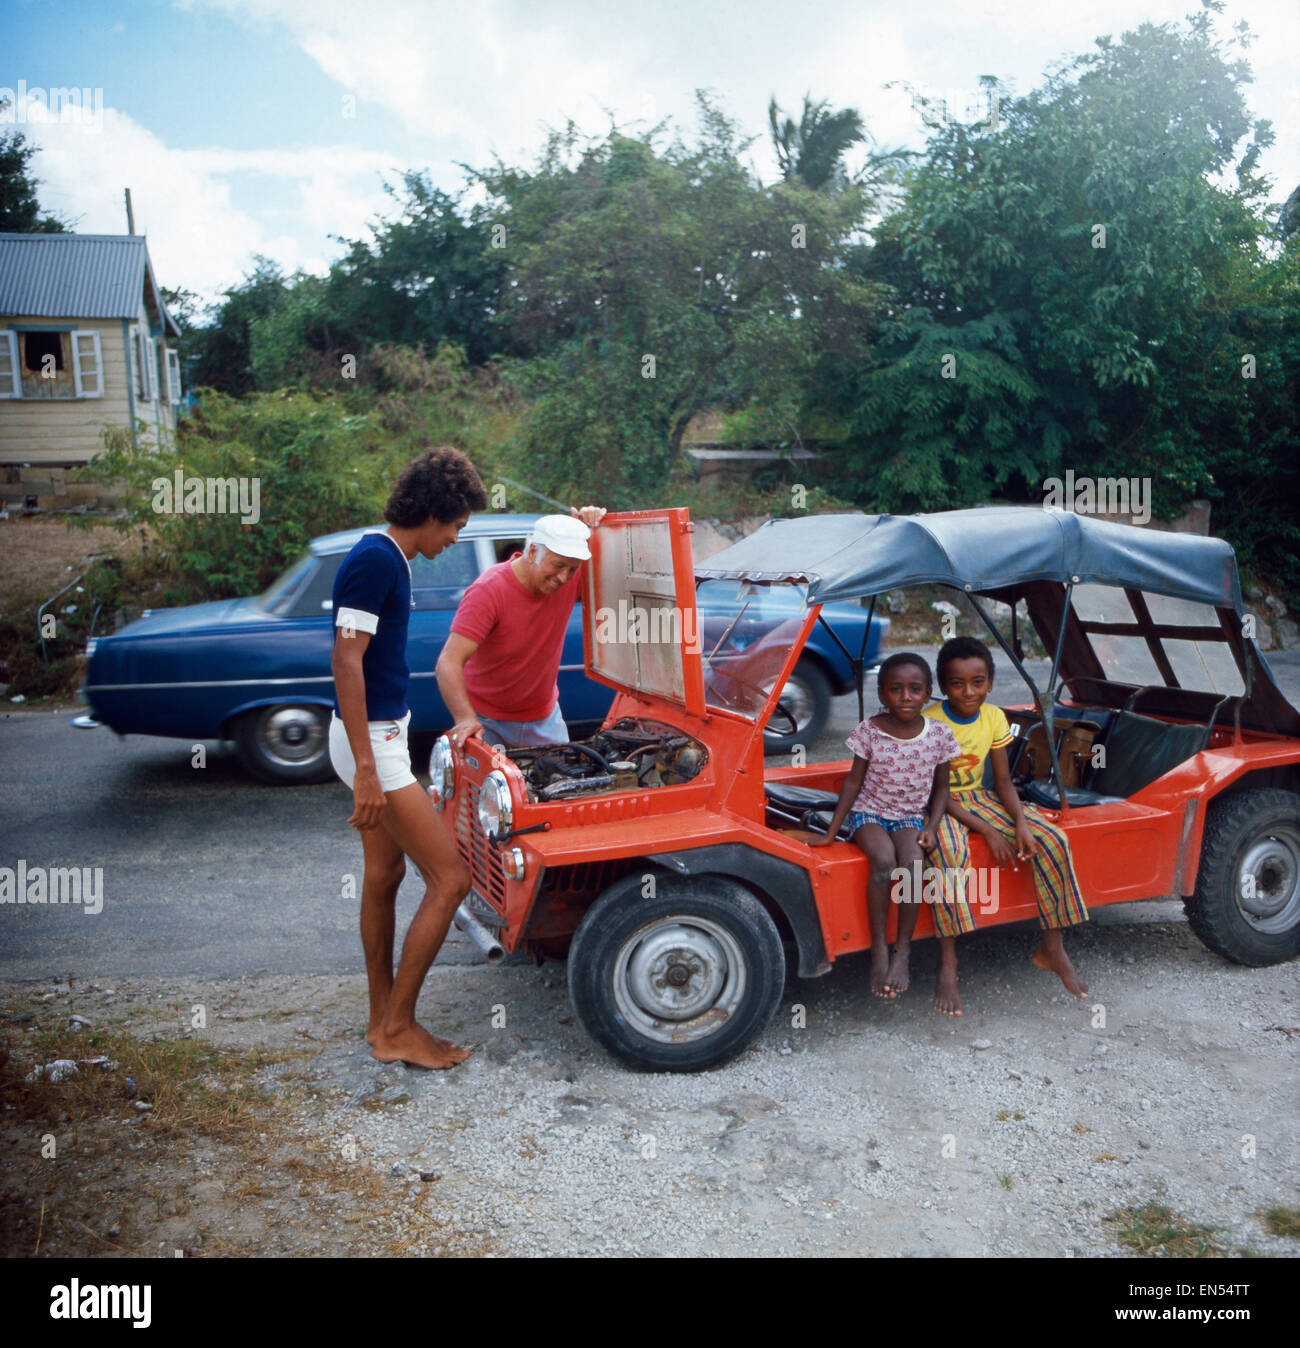 Eine Reise nach Barbados, 1980er Jahre. A trip to Barbados, 1980s. Stock Photo